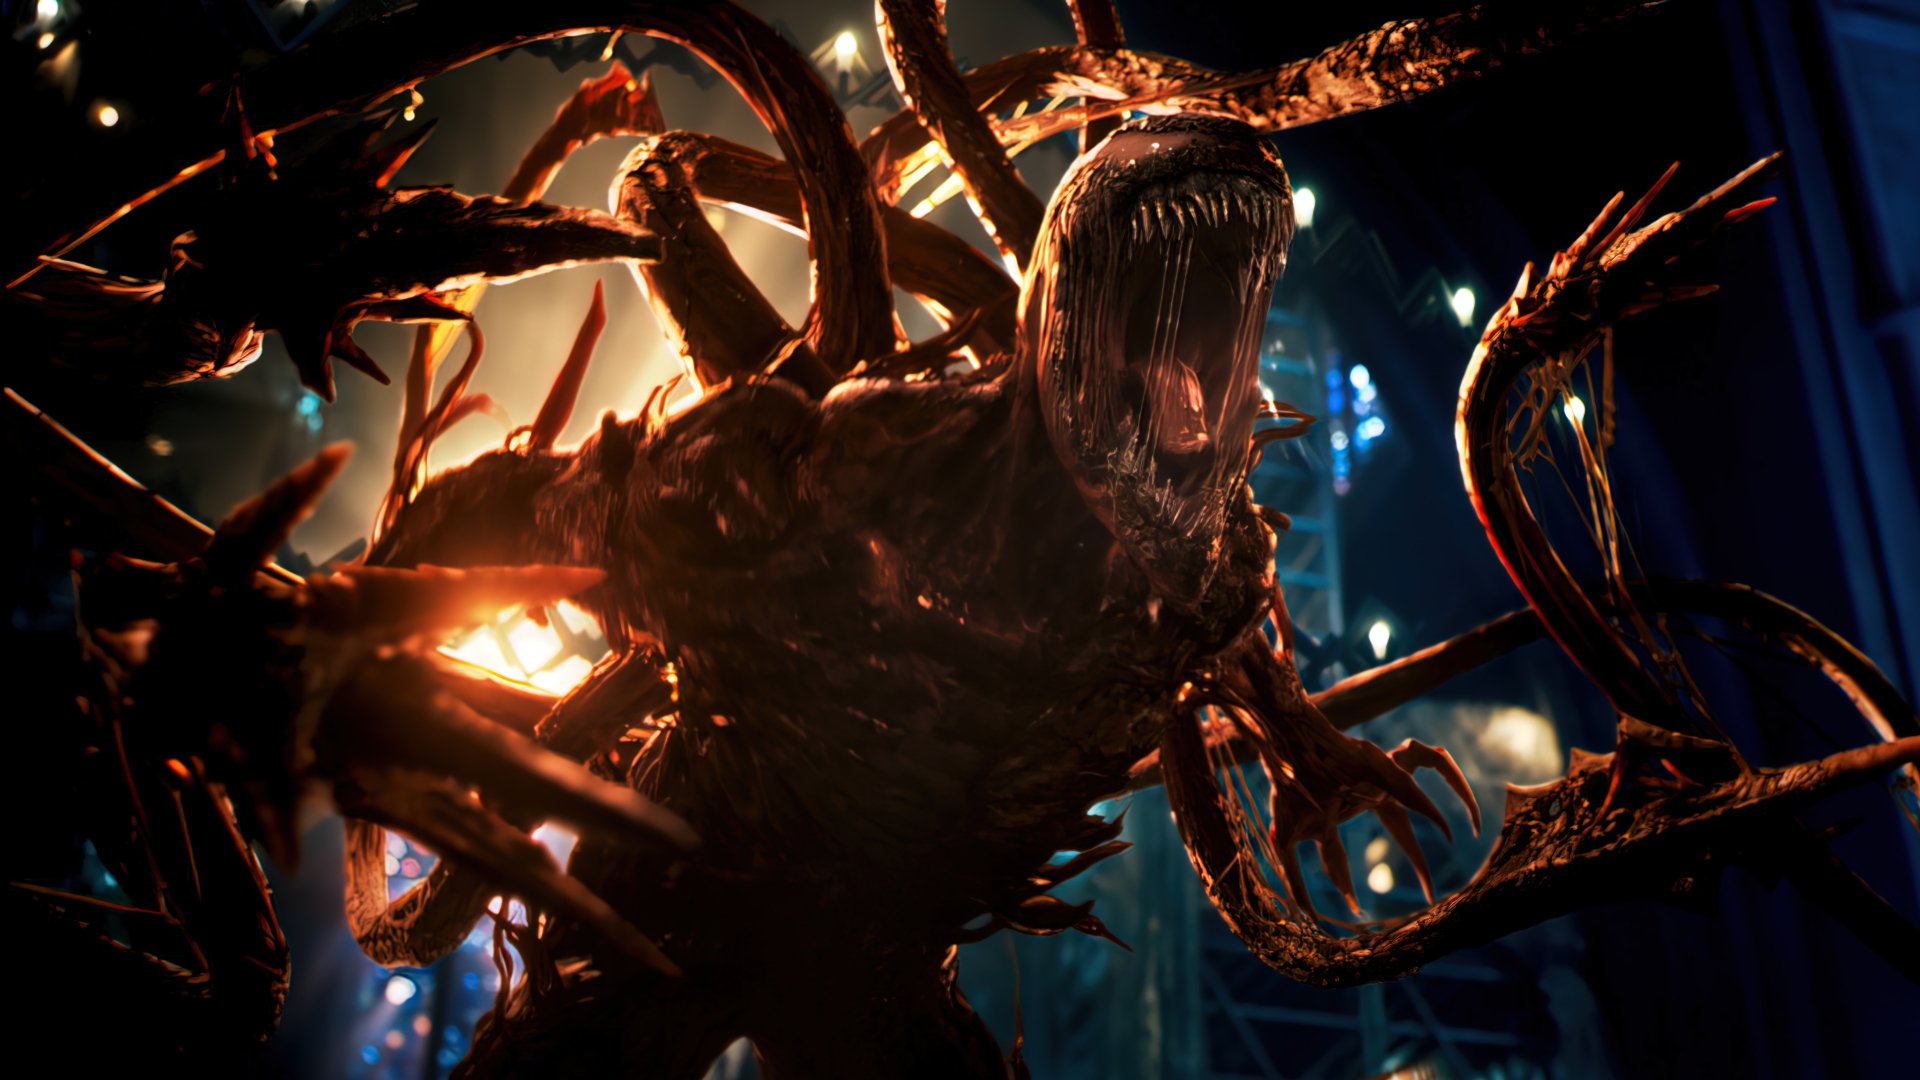 نمایش ظاهر کامل کارنیج در فیلم Venom 2 با بازی تام هاردی